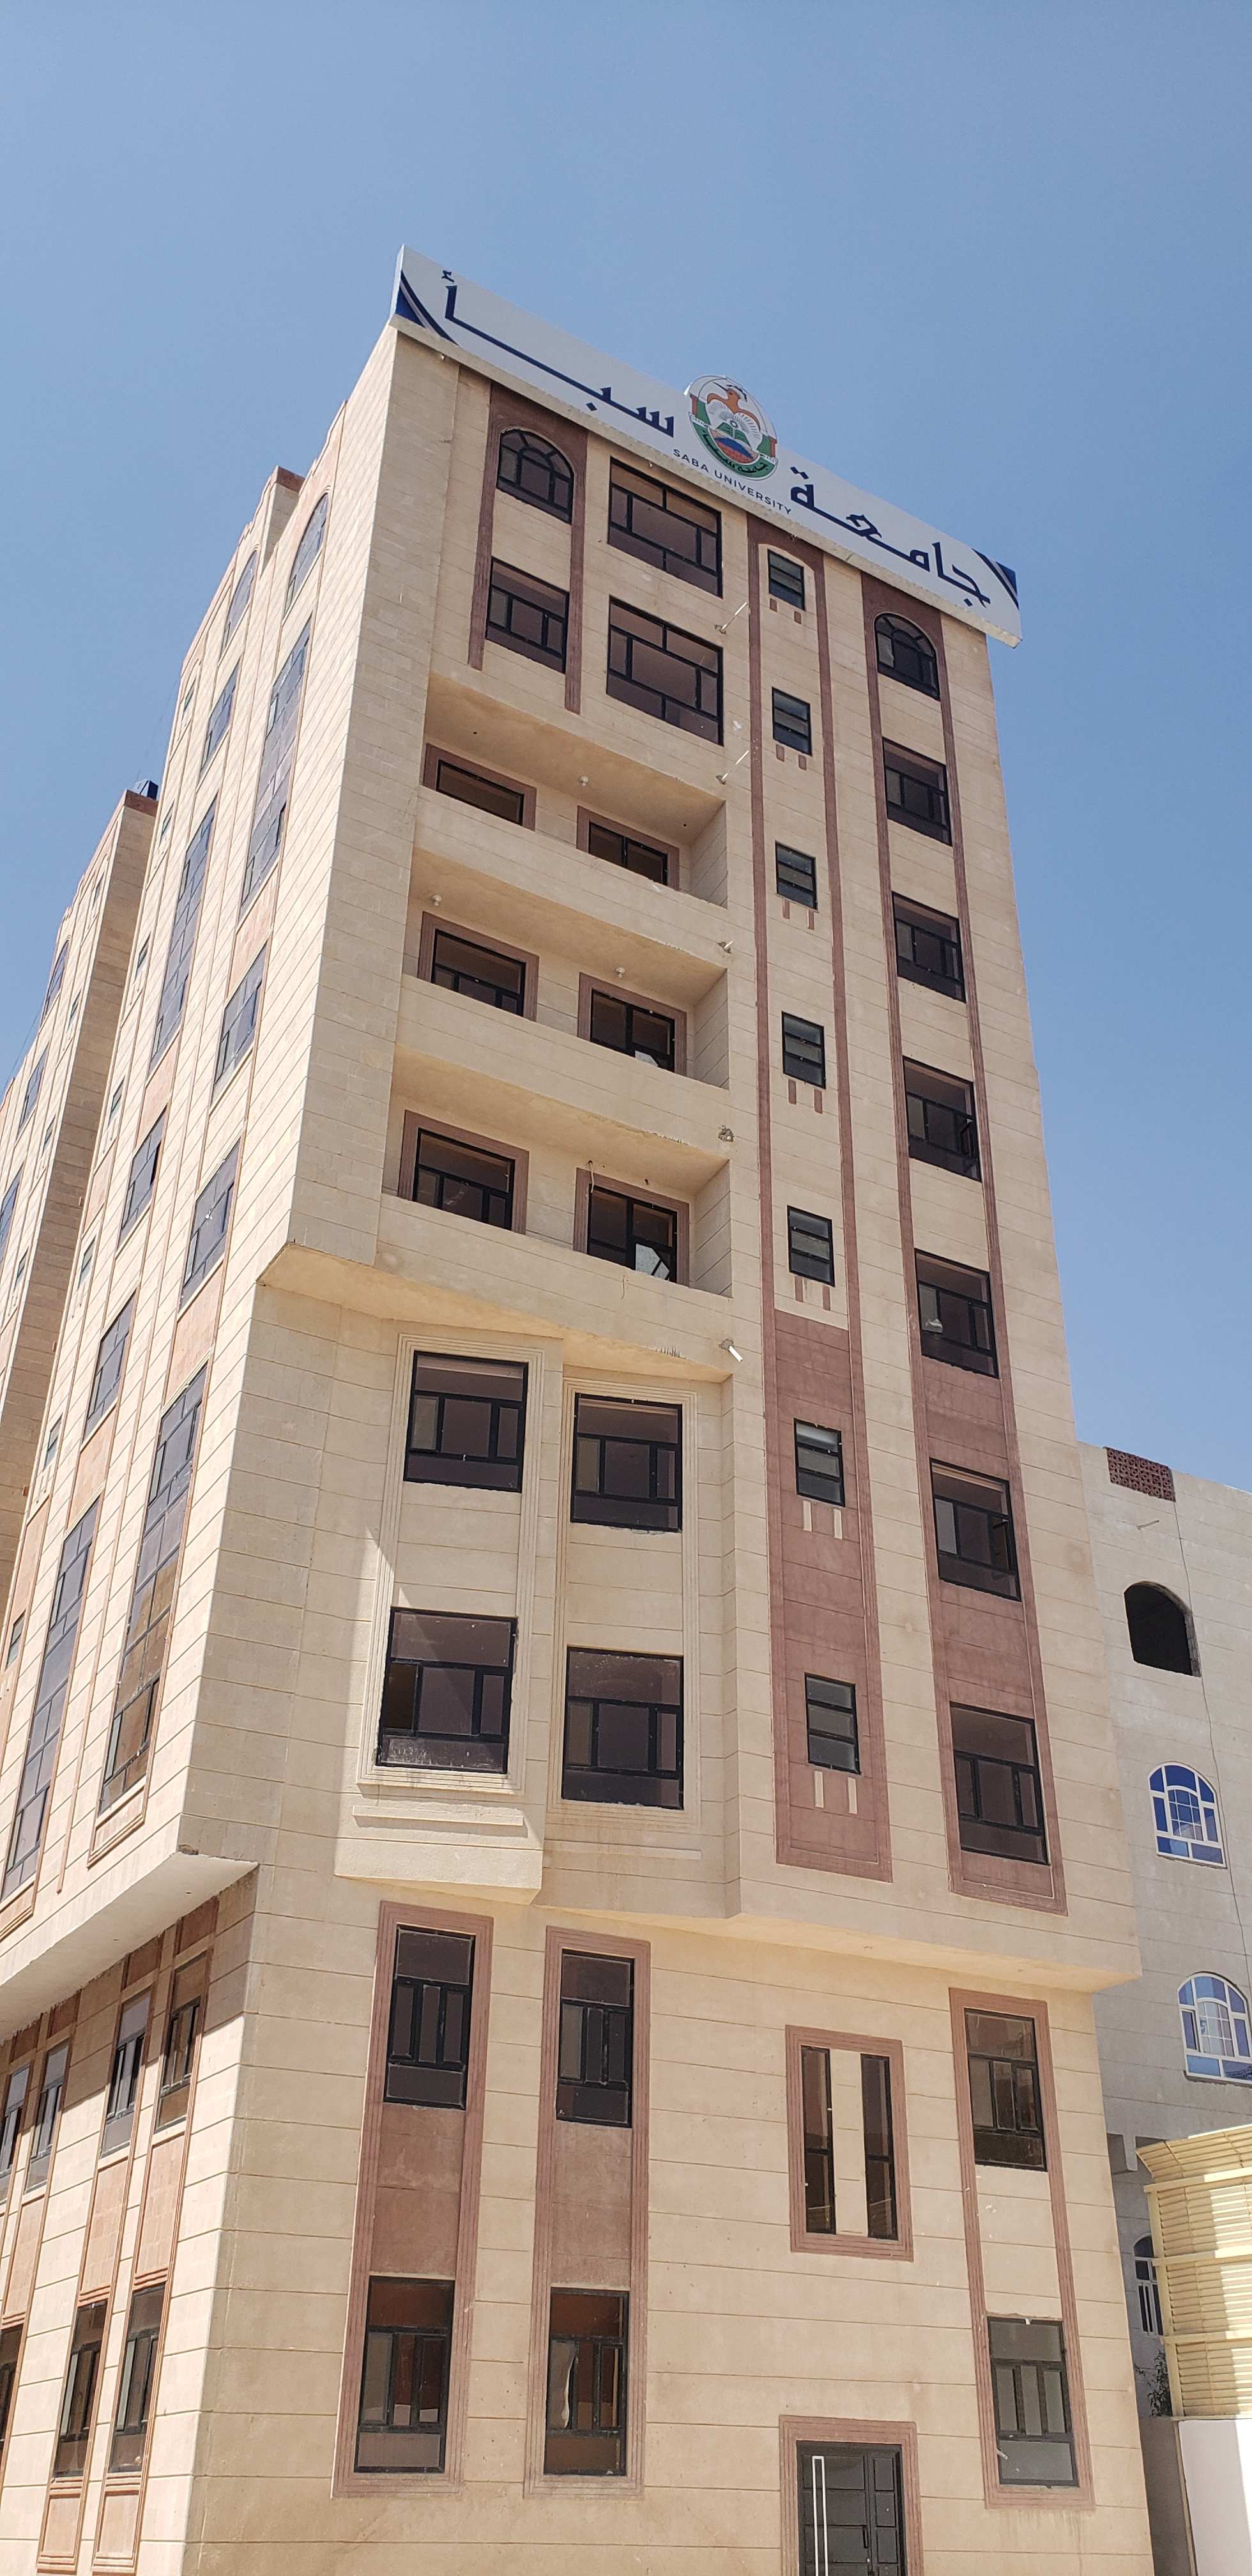 غدا بالعاصمة صنعاء أعرق جامعة اهلية تدشن رسميا المبنى الجديد للصرح العلمي الشامخ